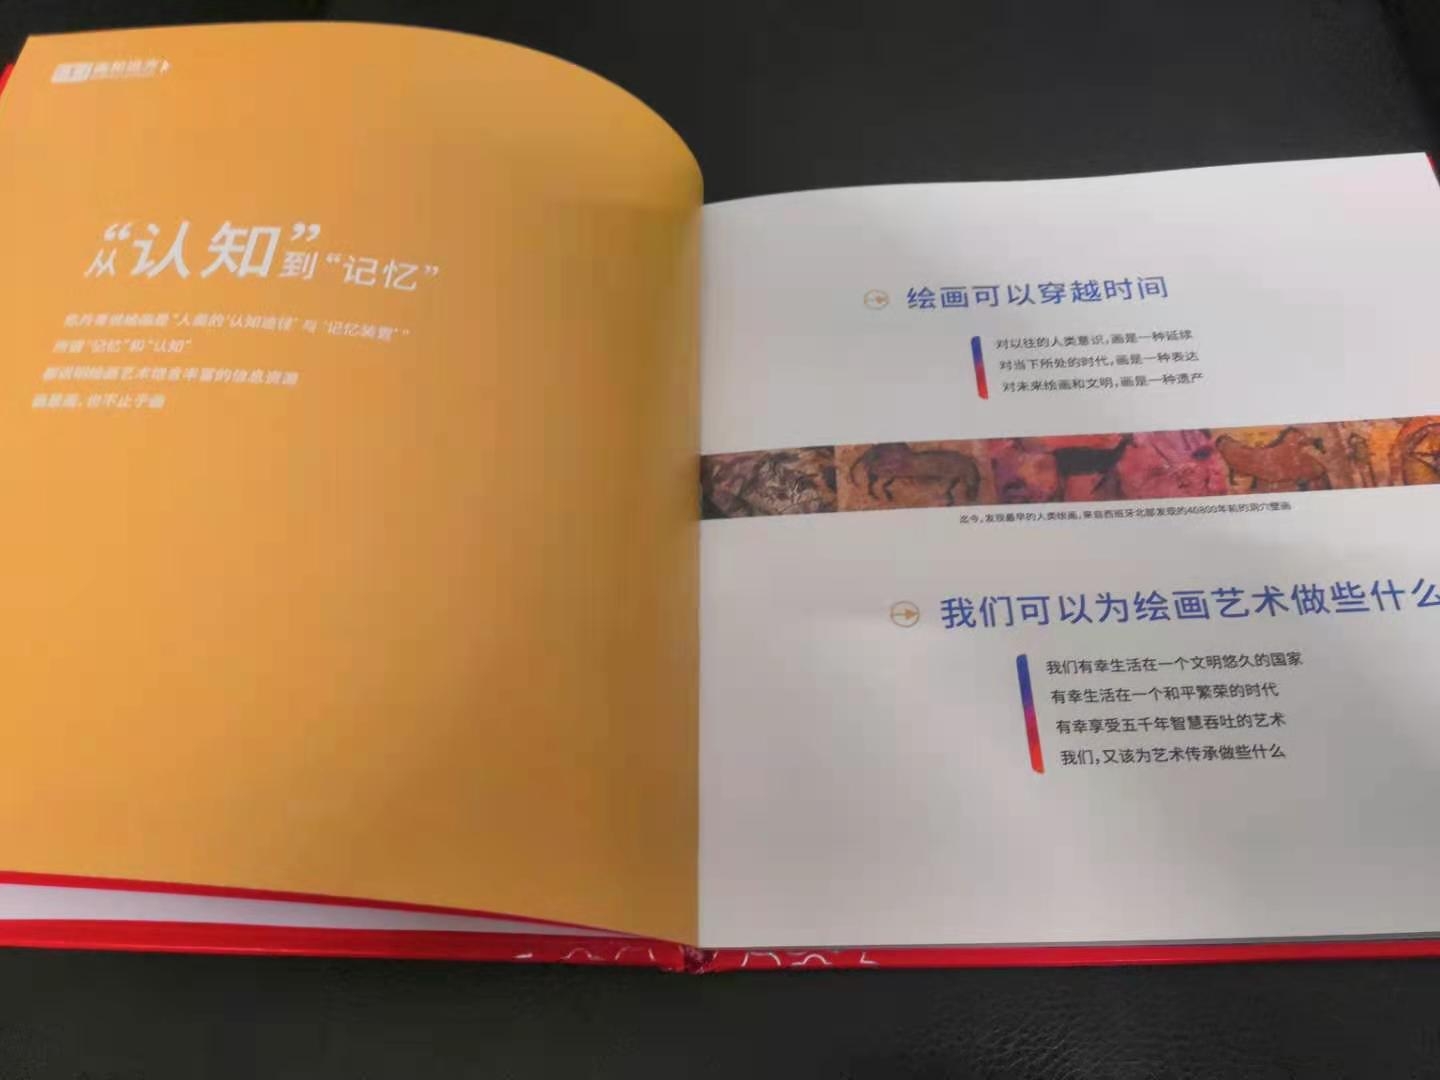 桂林精装书印刷